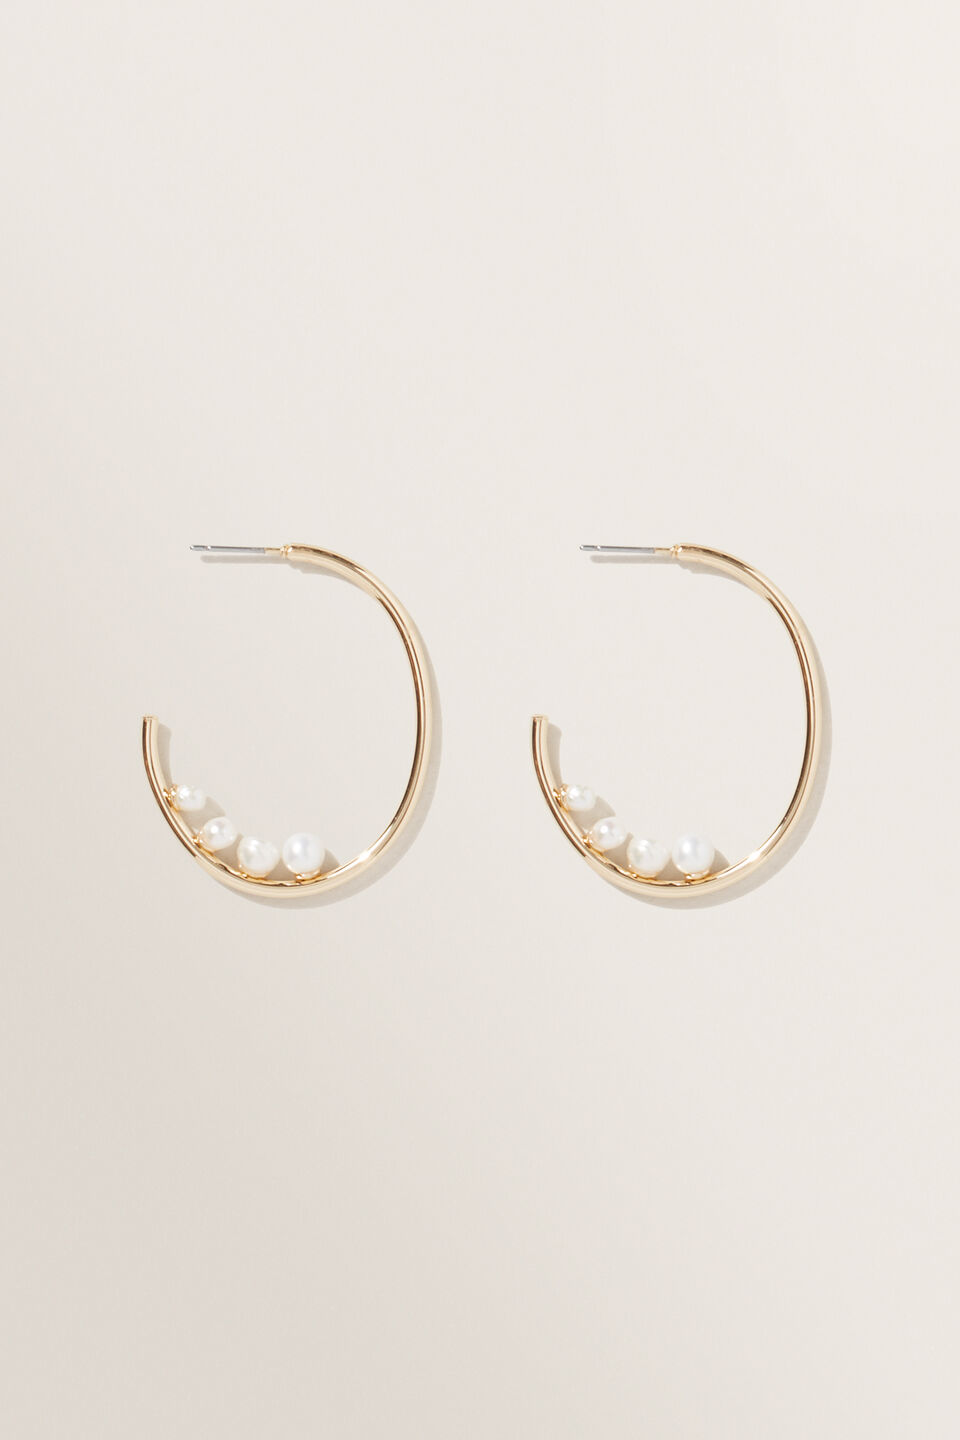 Multi Pearl Earrings  Gold